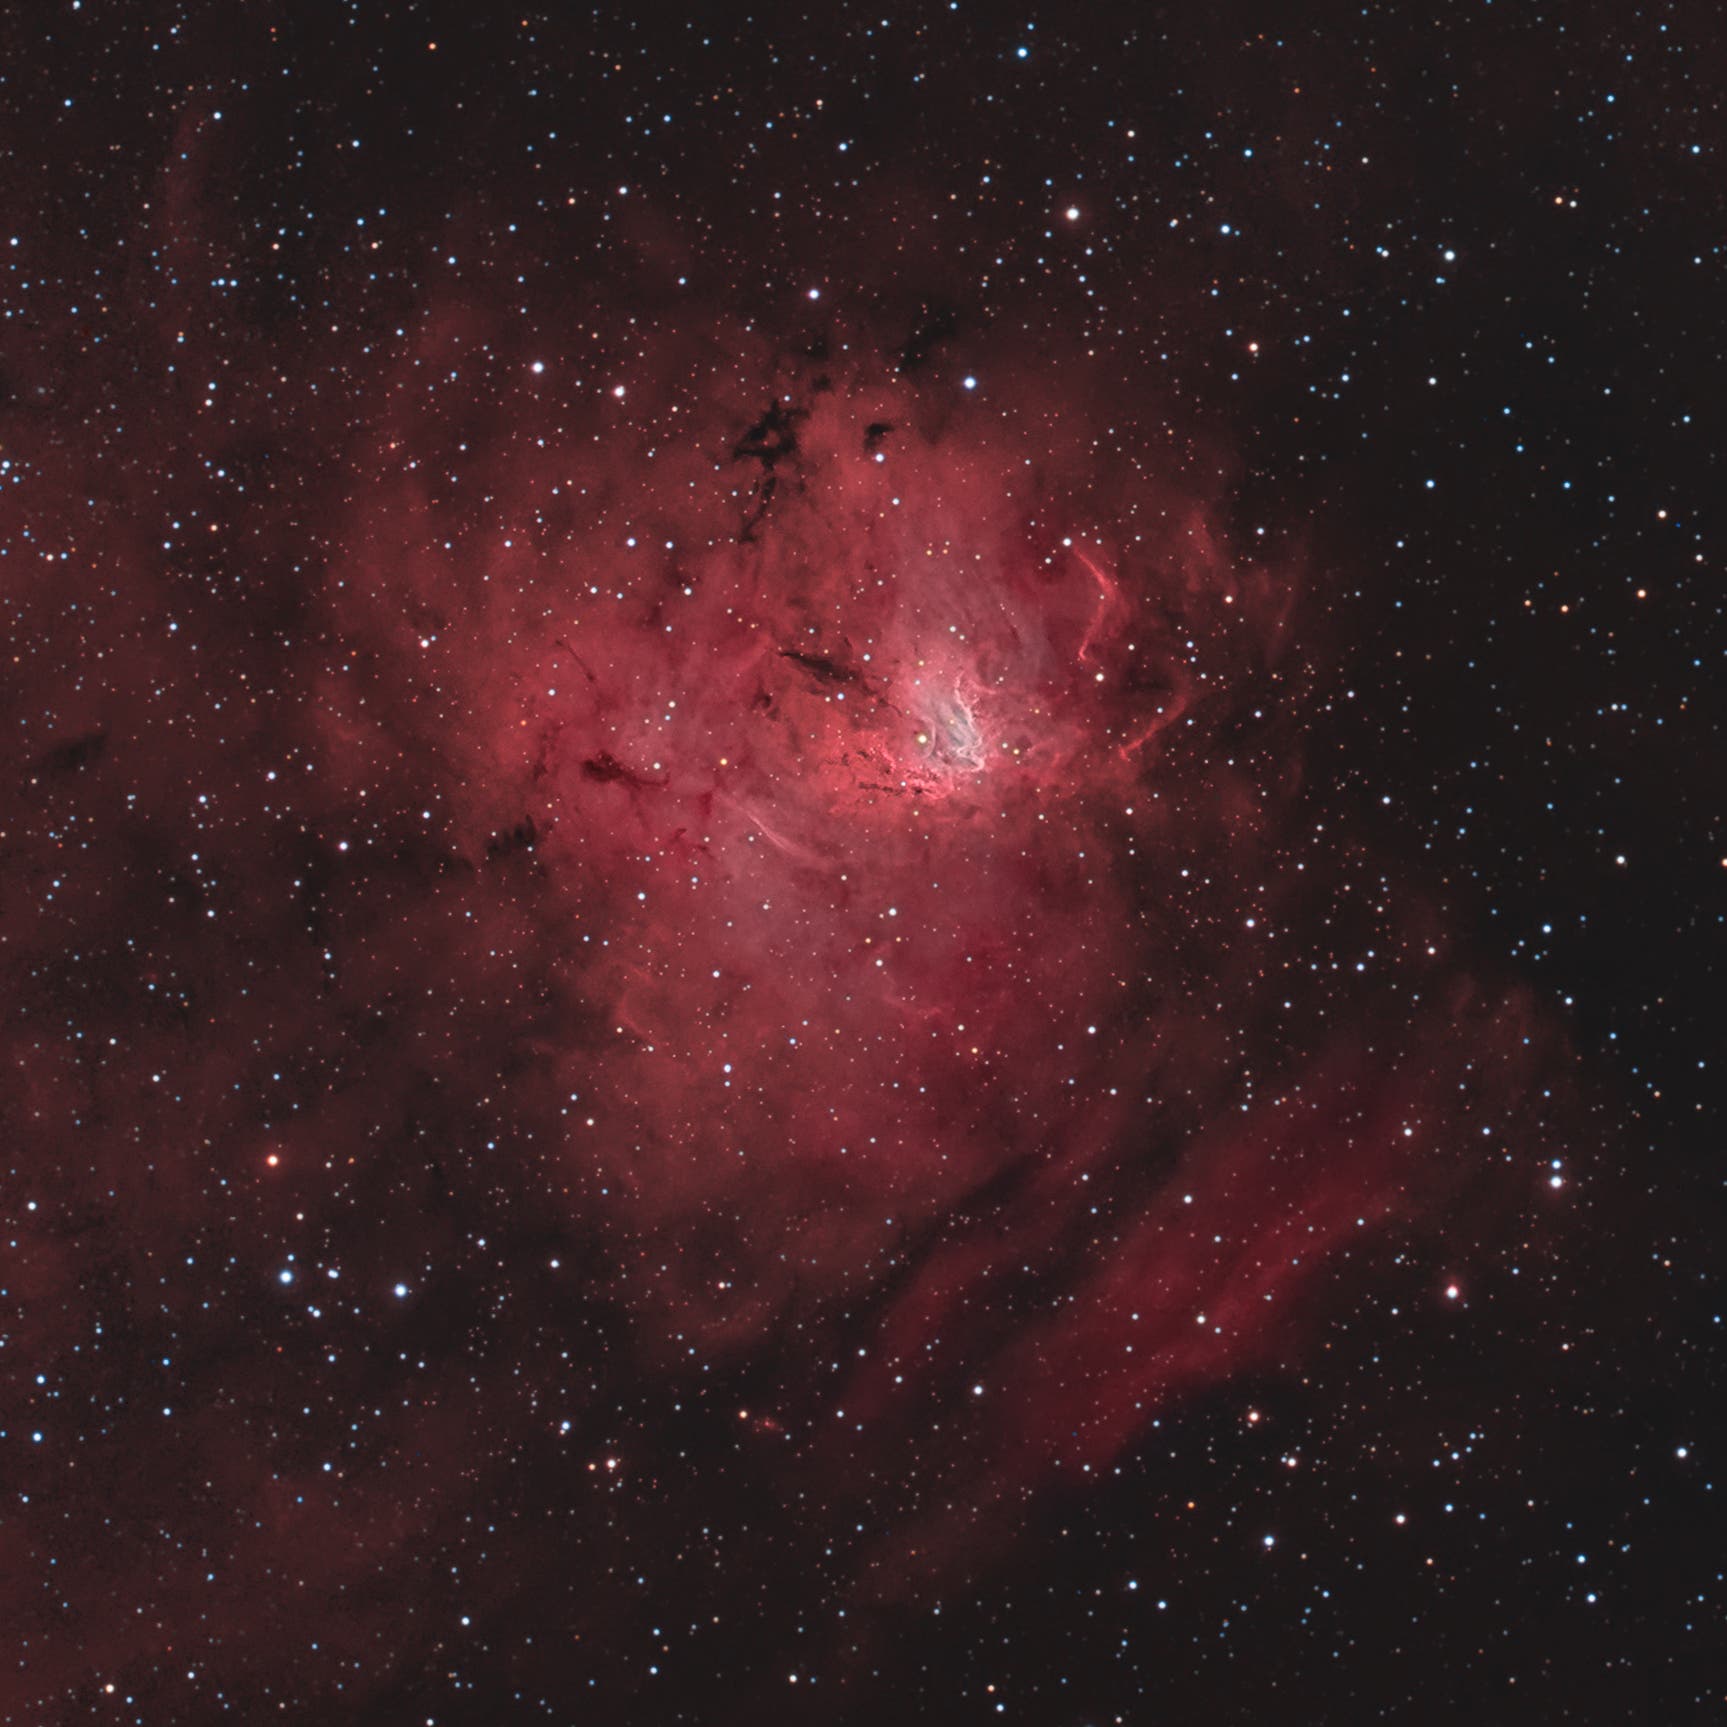 NGC1491 + Sh2-206 Bildausschnitt